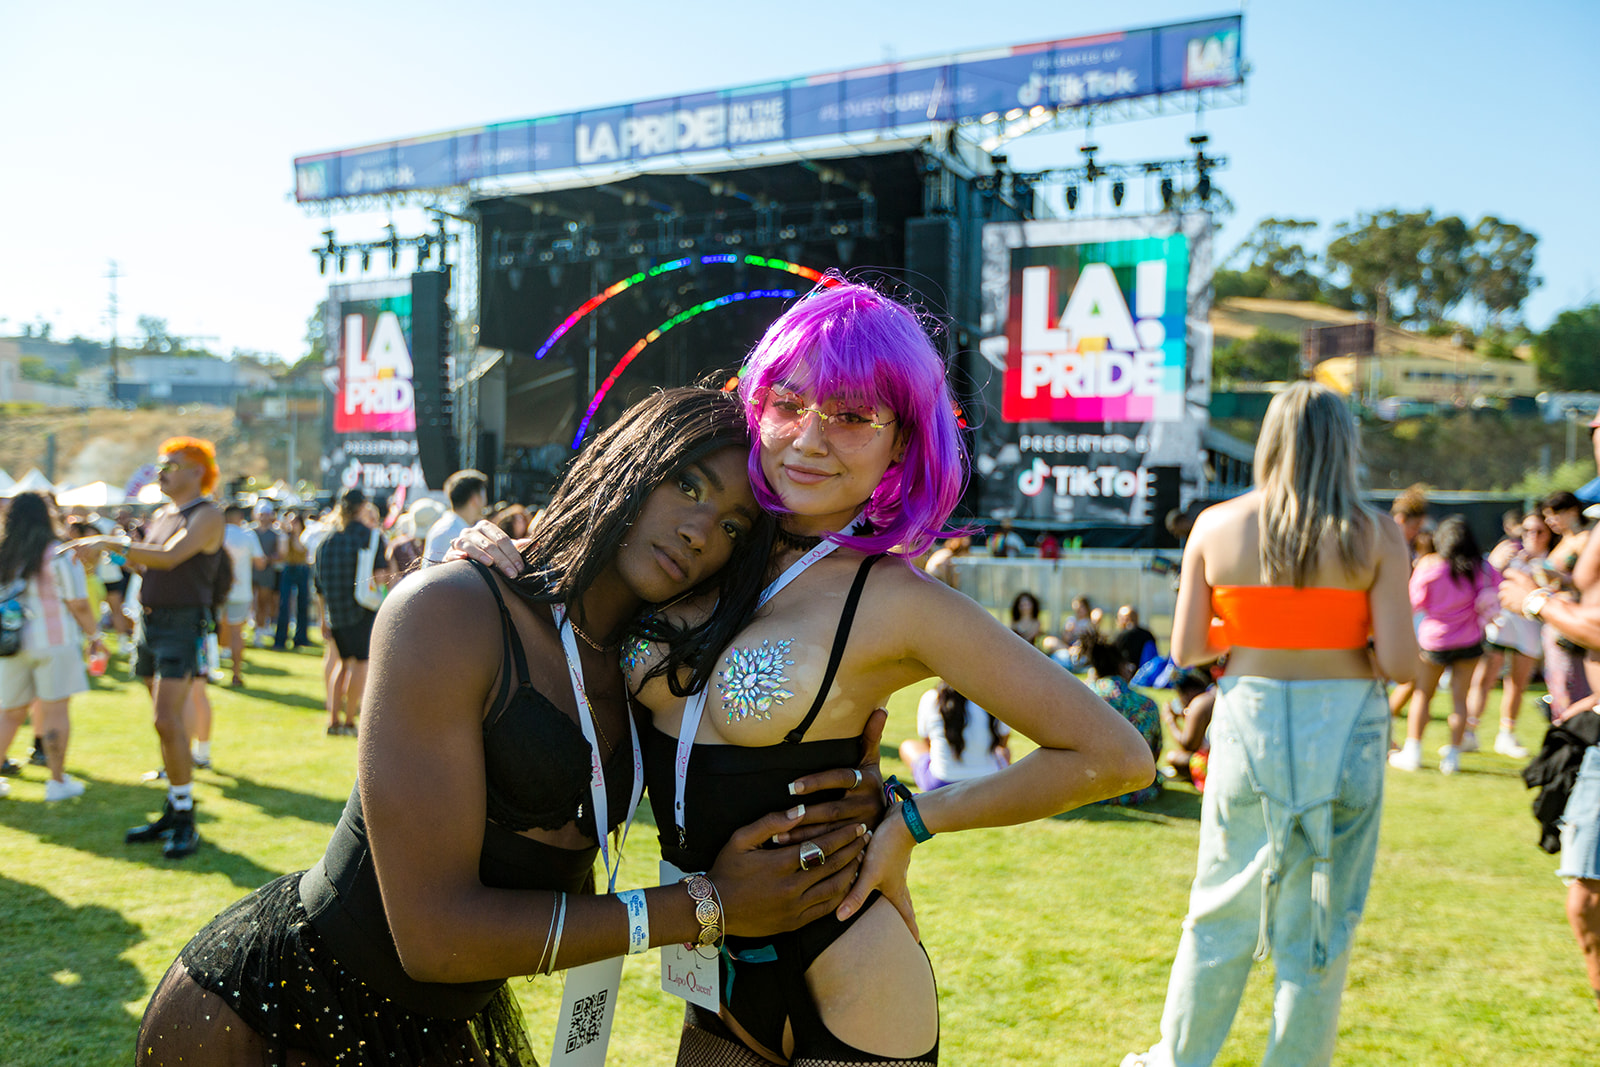 LA Pride (@lapride) • Instagram photos and videos